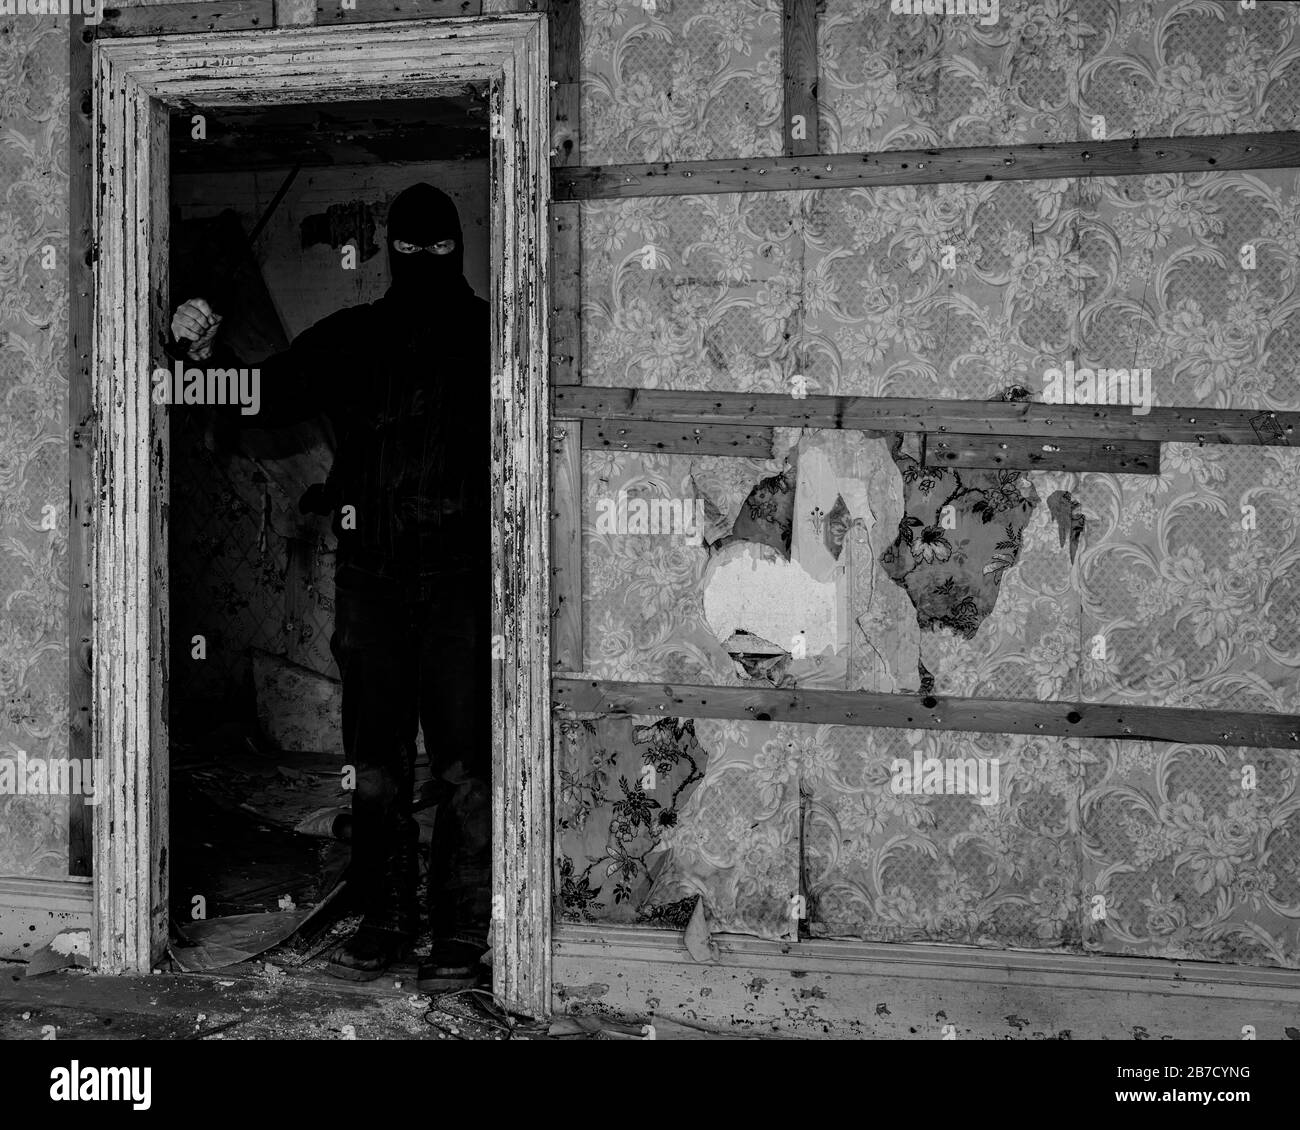 Un homme portant un masque/une capuche dans un bâtiment abandonné. Il tient un grand couteau, et se tient dans l'ombre dans une porte. Noir et blanc. Banque D'Images